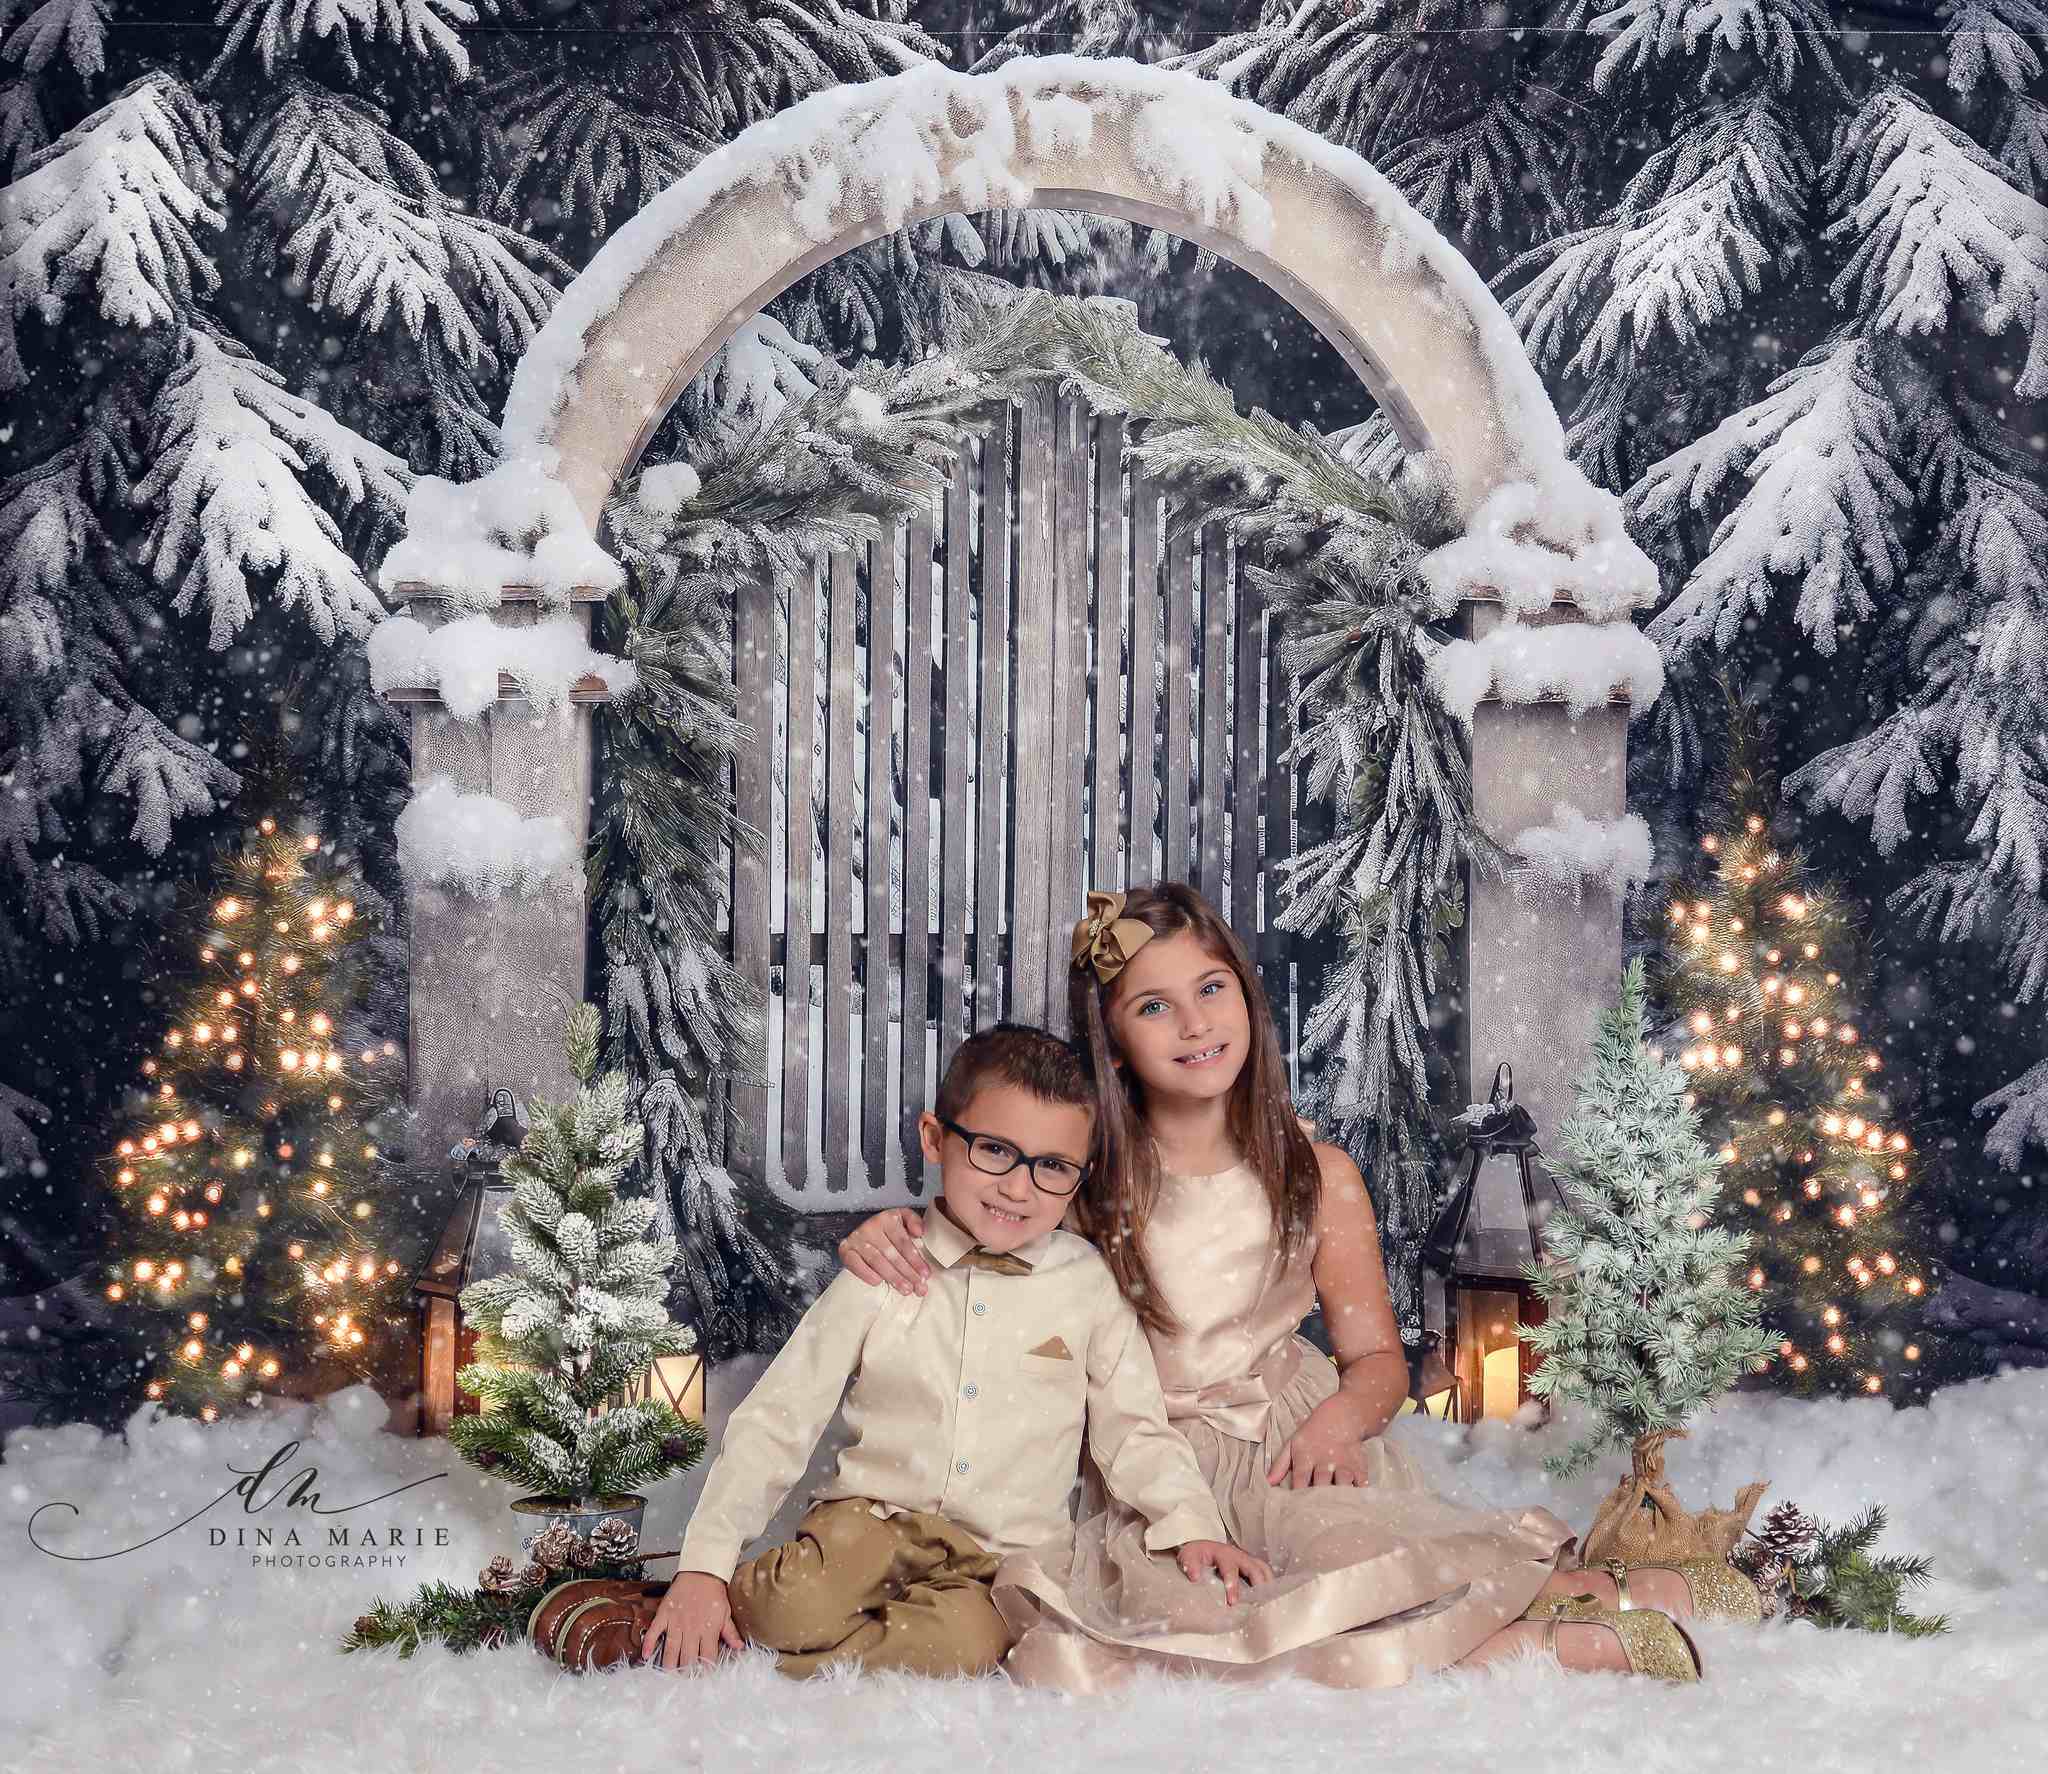 Kate Weihnachten im Freien verschneites Tor Baum Licht Hintergrund von Chain Photography